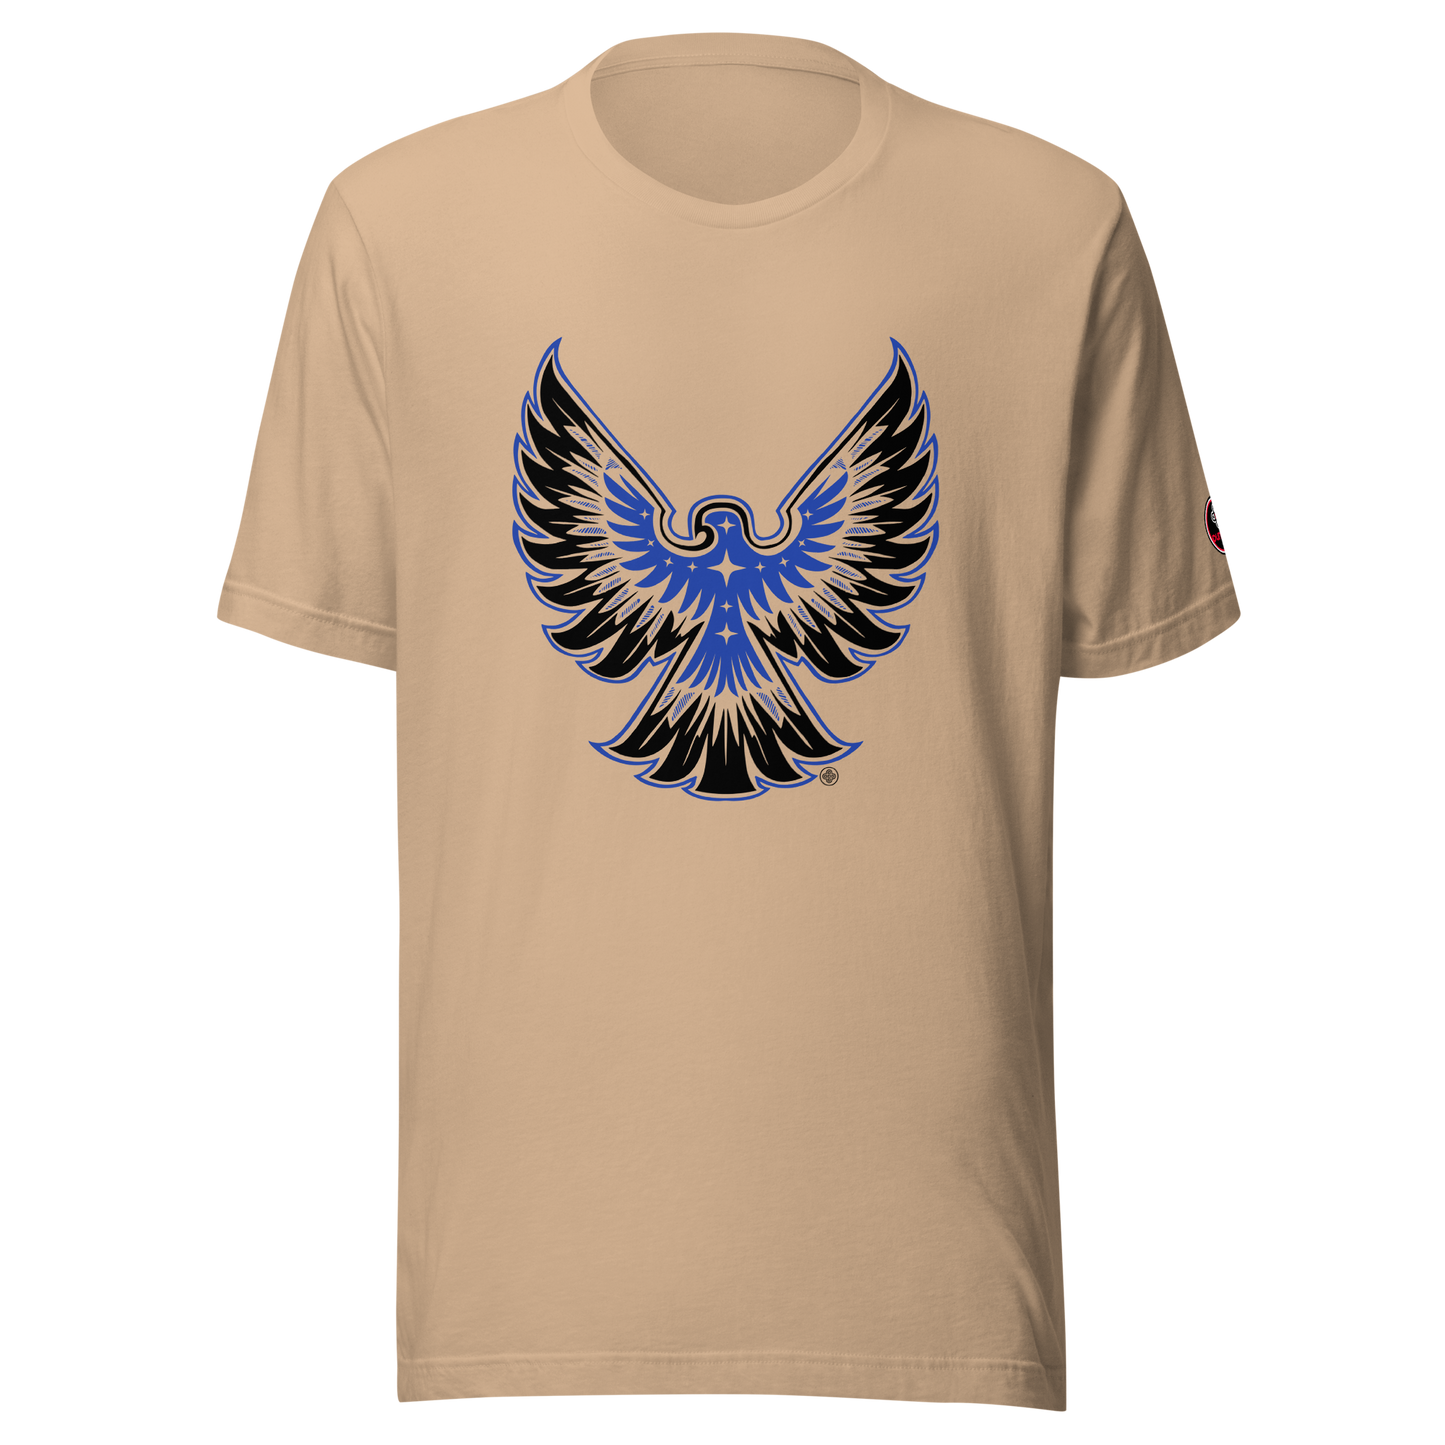 T-shirt unisexe ❯ Déploie tes ailes ❯ Couleurs assorties